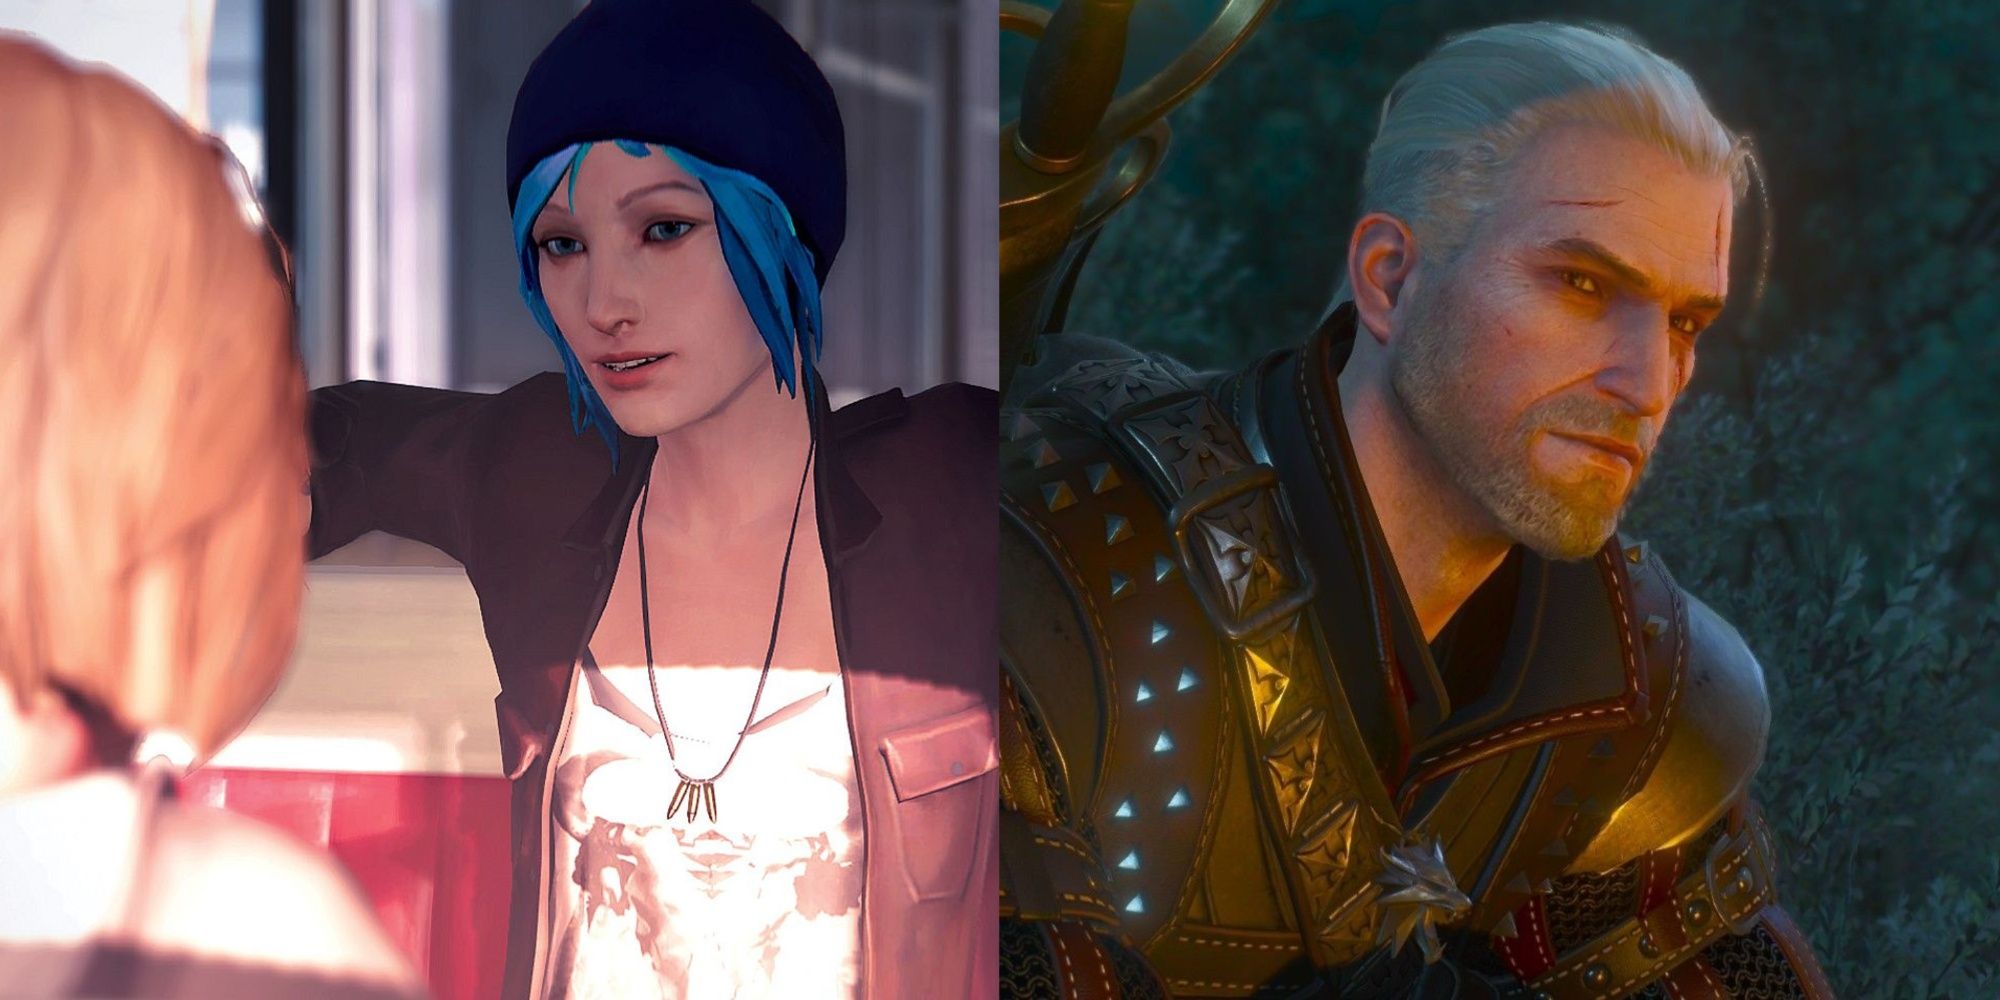 PS4-Spiele mit den besten Handlungssträngen mit geteiltem Bild von Chloe aus Life Is Strange und Geralt aus The Witcher 3